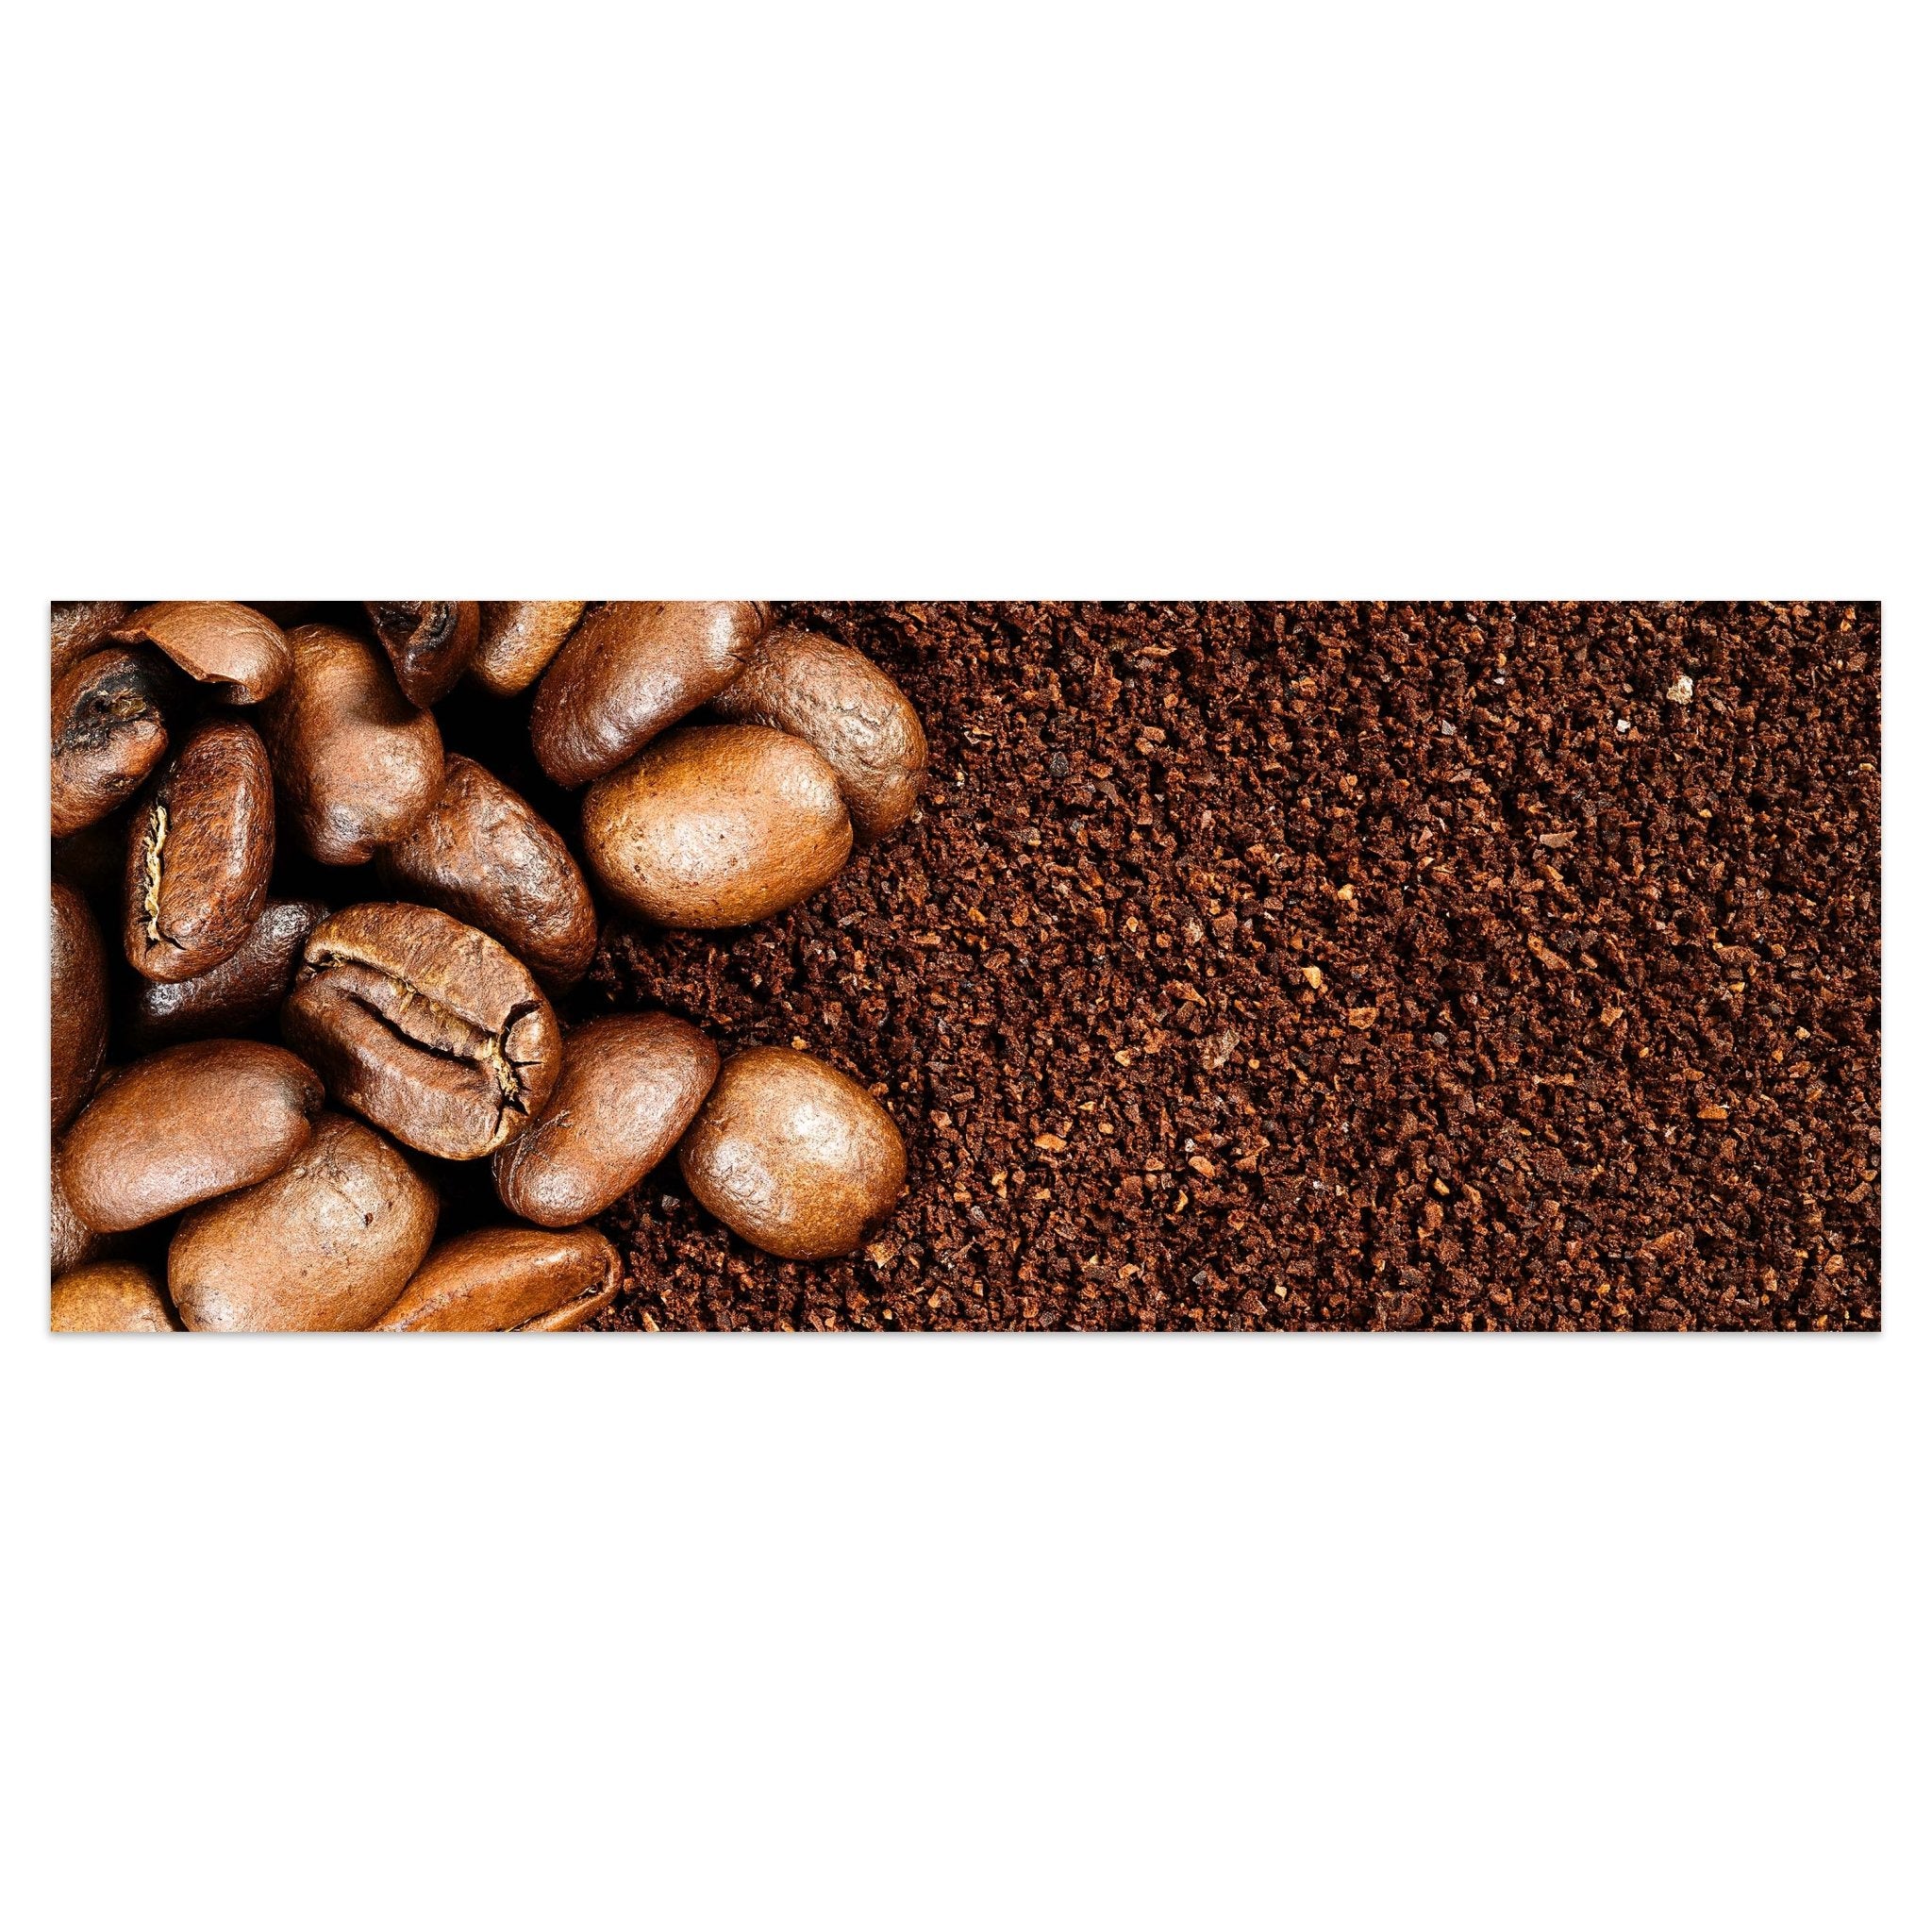 Leinwandbild Geröstete Kaffeebohnen M0835 kaufen - Bild 1